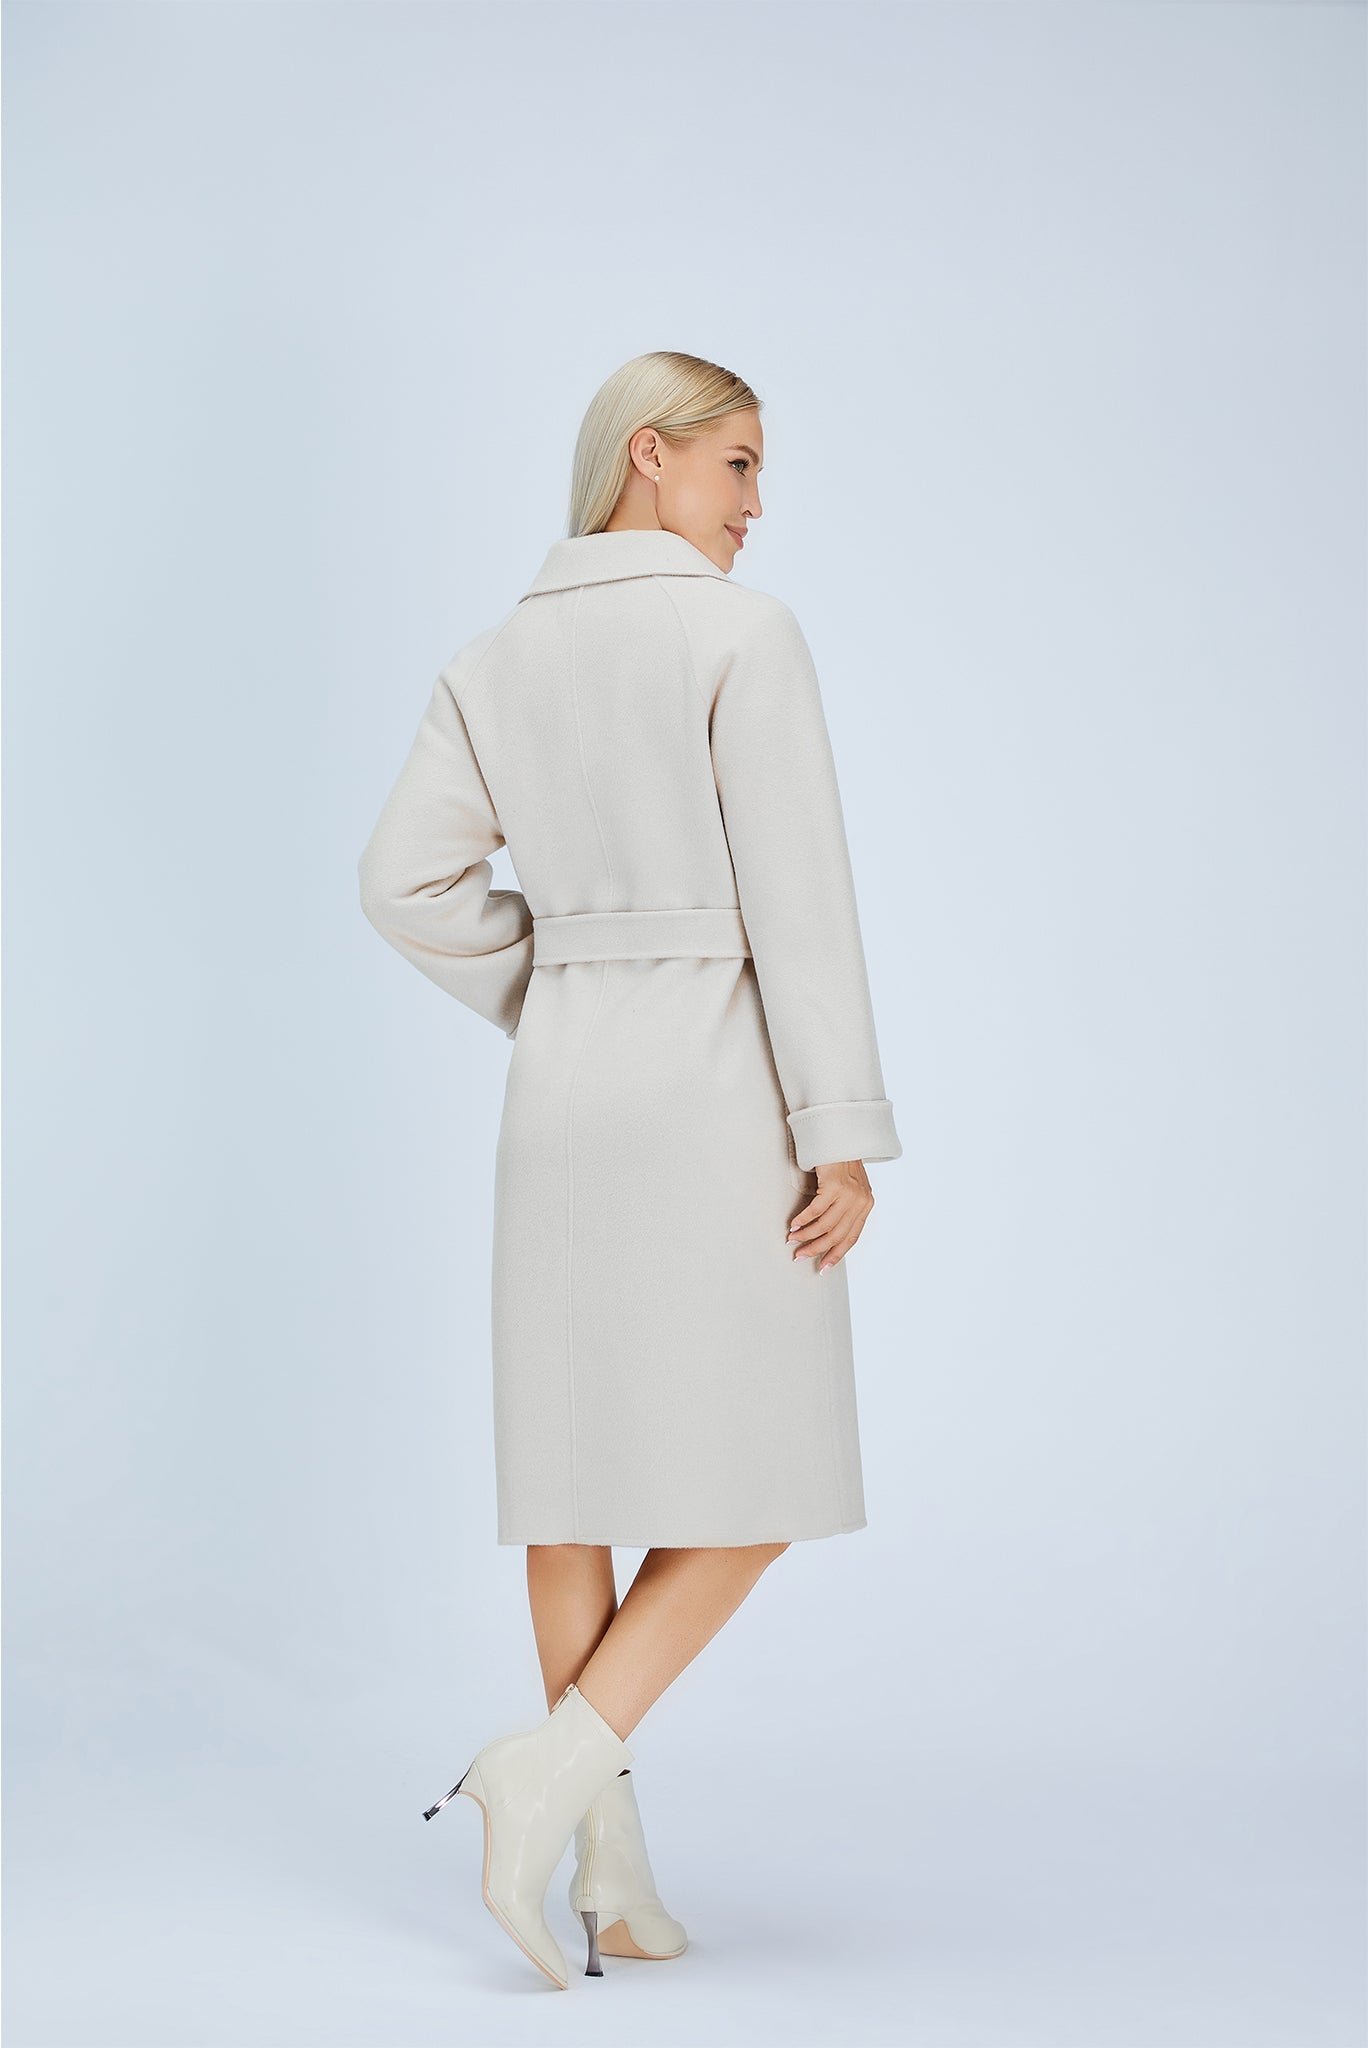 Merino Wool | Belted Coat | Women Coat | Merino Coat | Bellemere New York